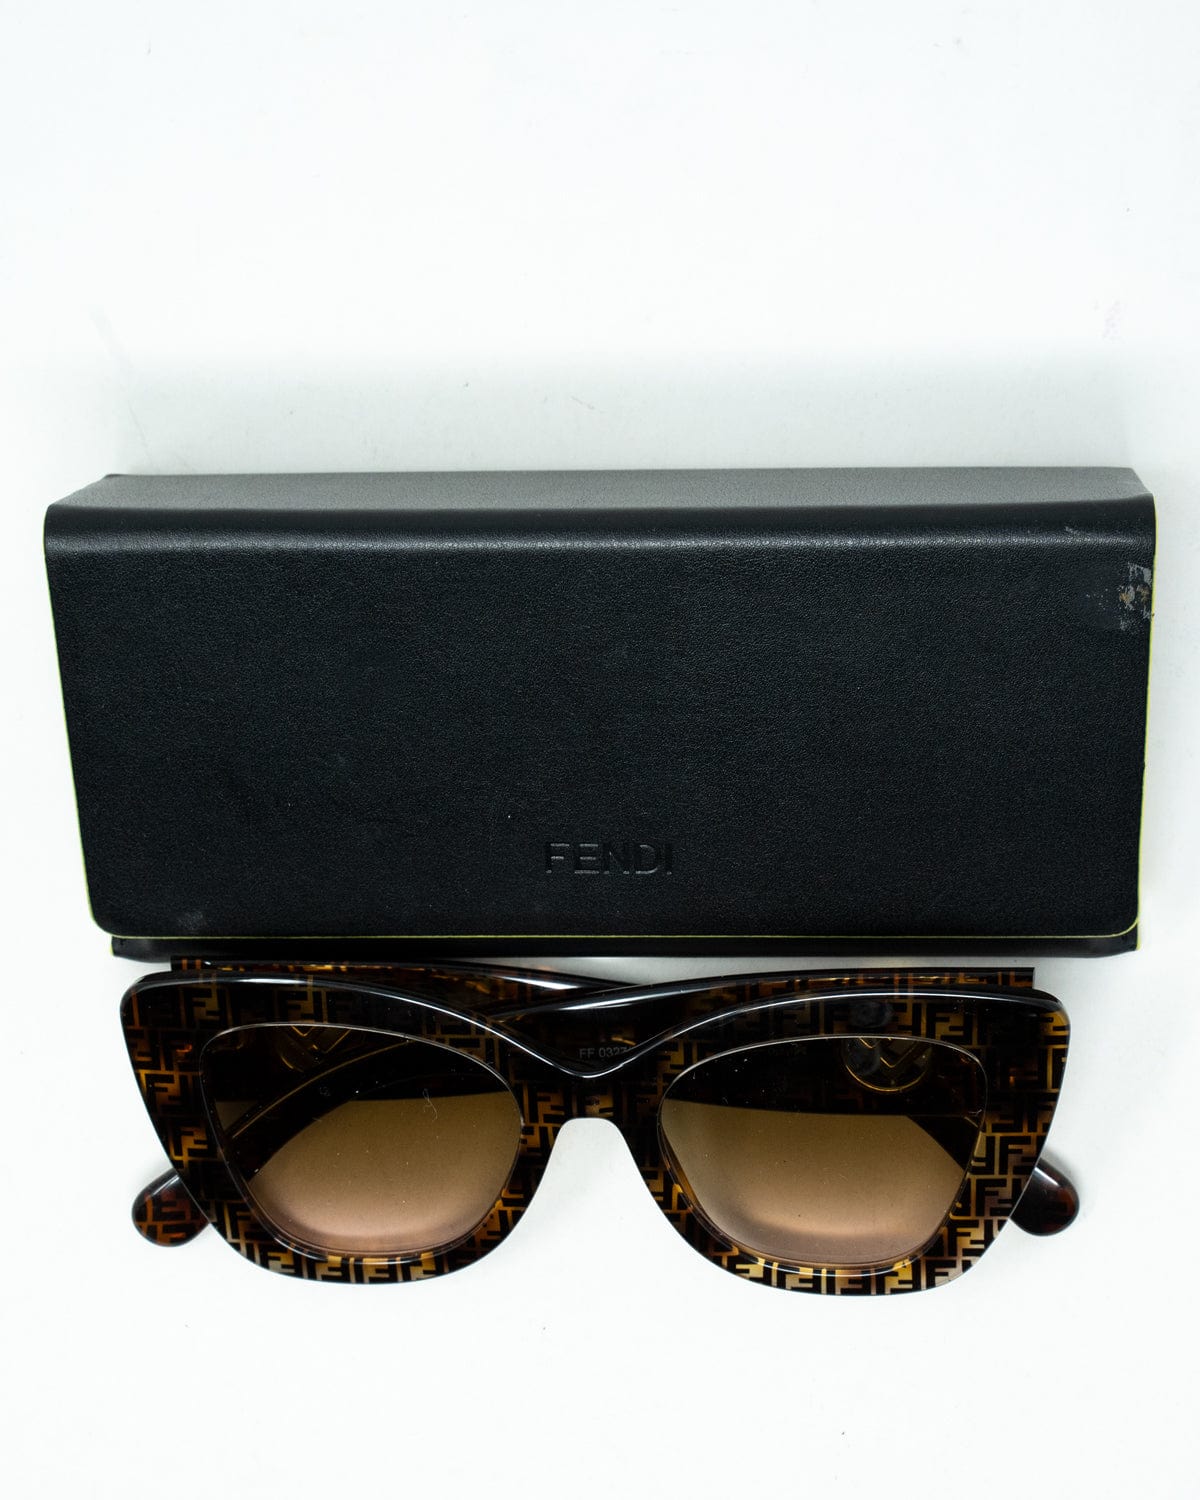 Fendi Fendi FF sunglasses - ADL1924